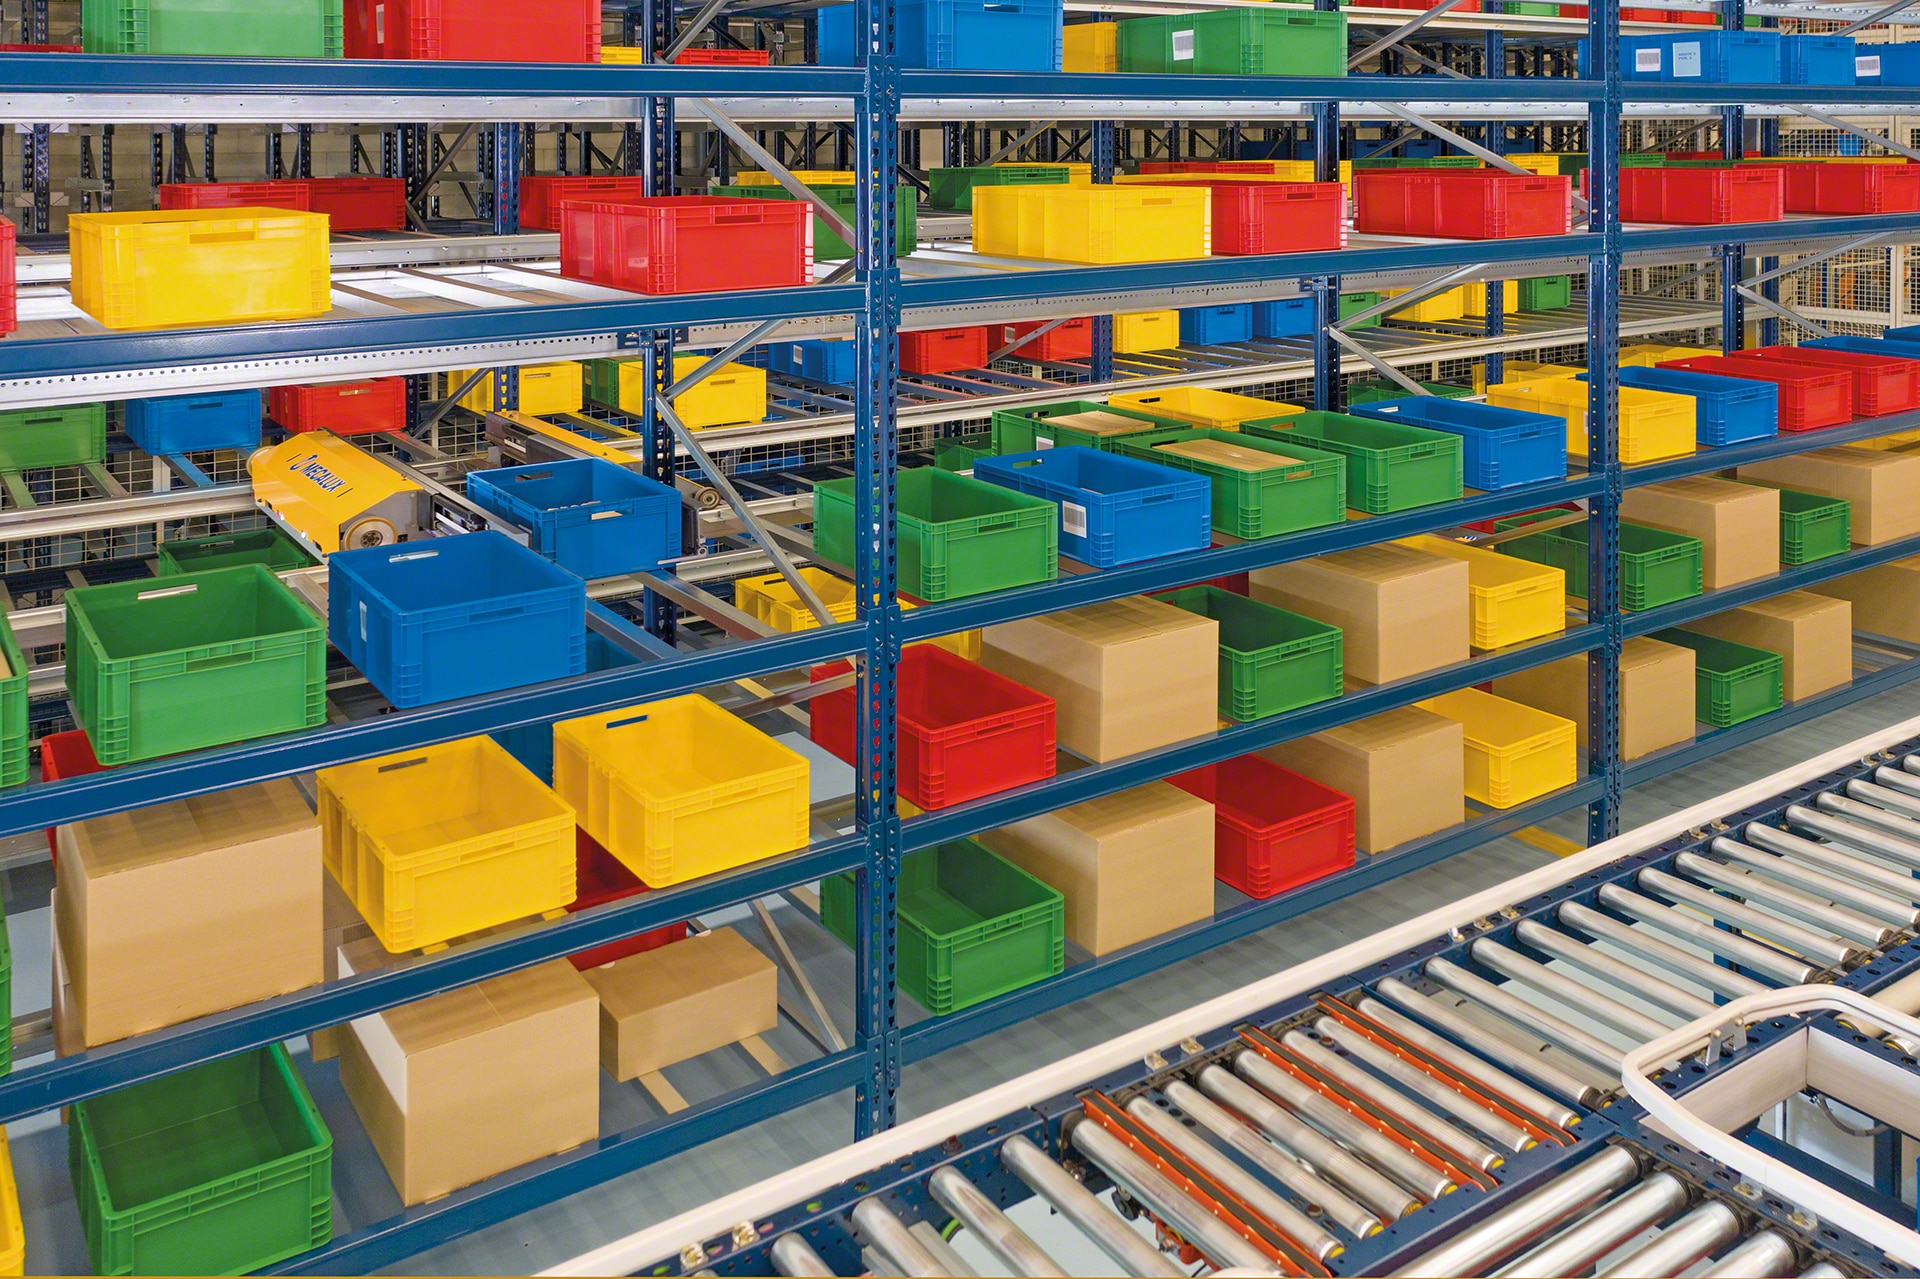 El Sistema Shuttle puede gestionar distintos tipos de cajas, de plástico o cartón, y de múltiples tamaños